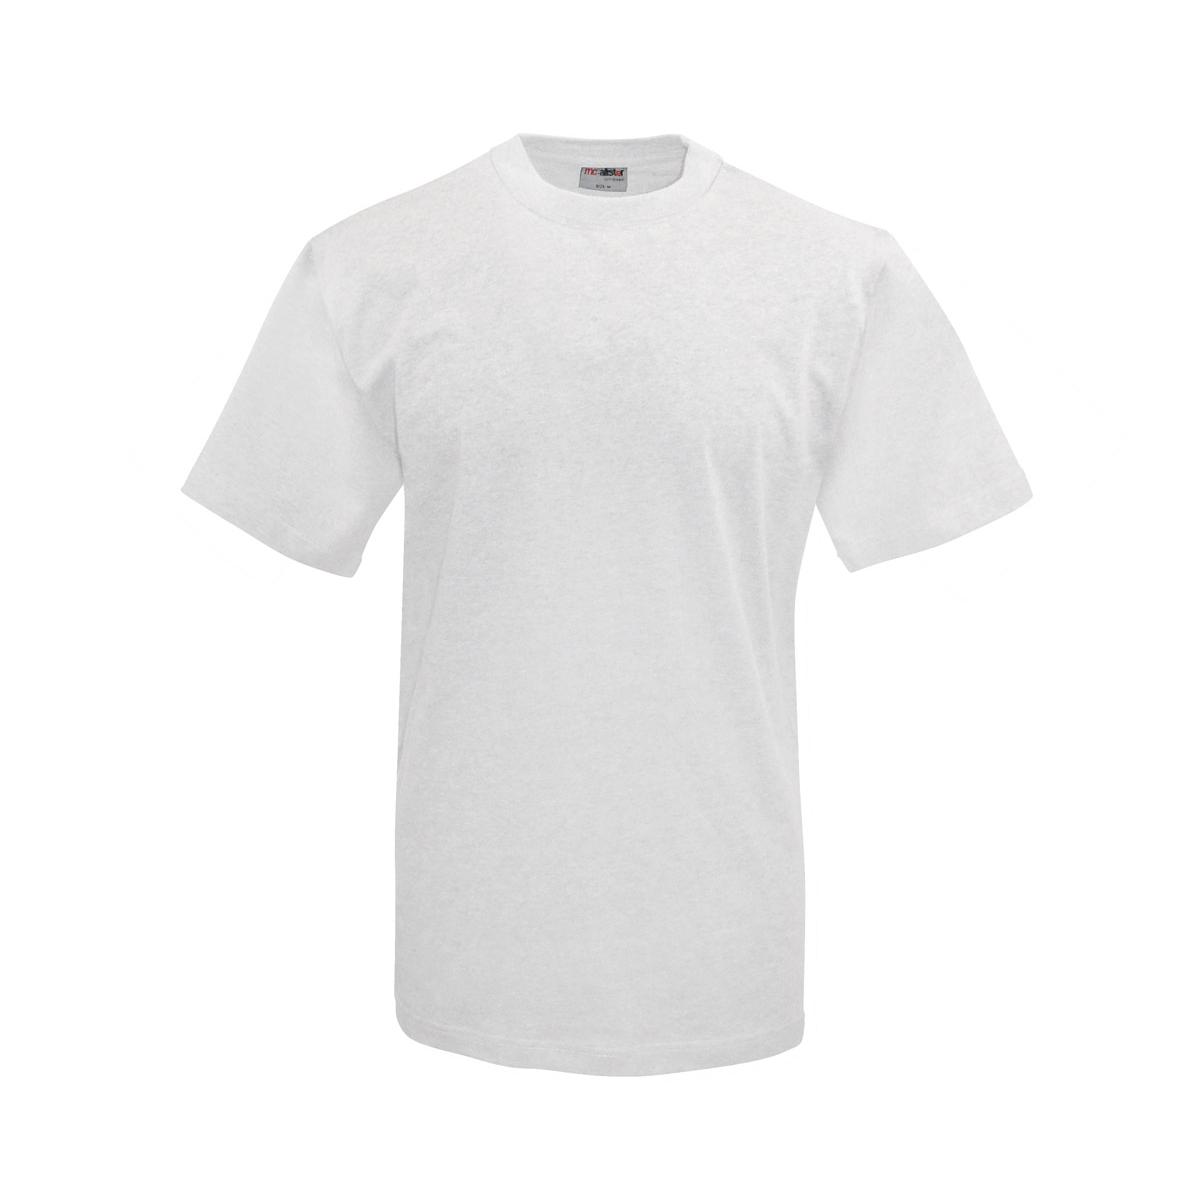 Active Wear - Männer T-Shirt - weiß